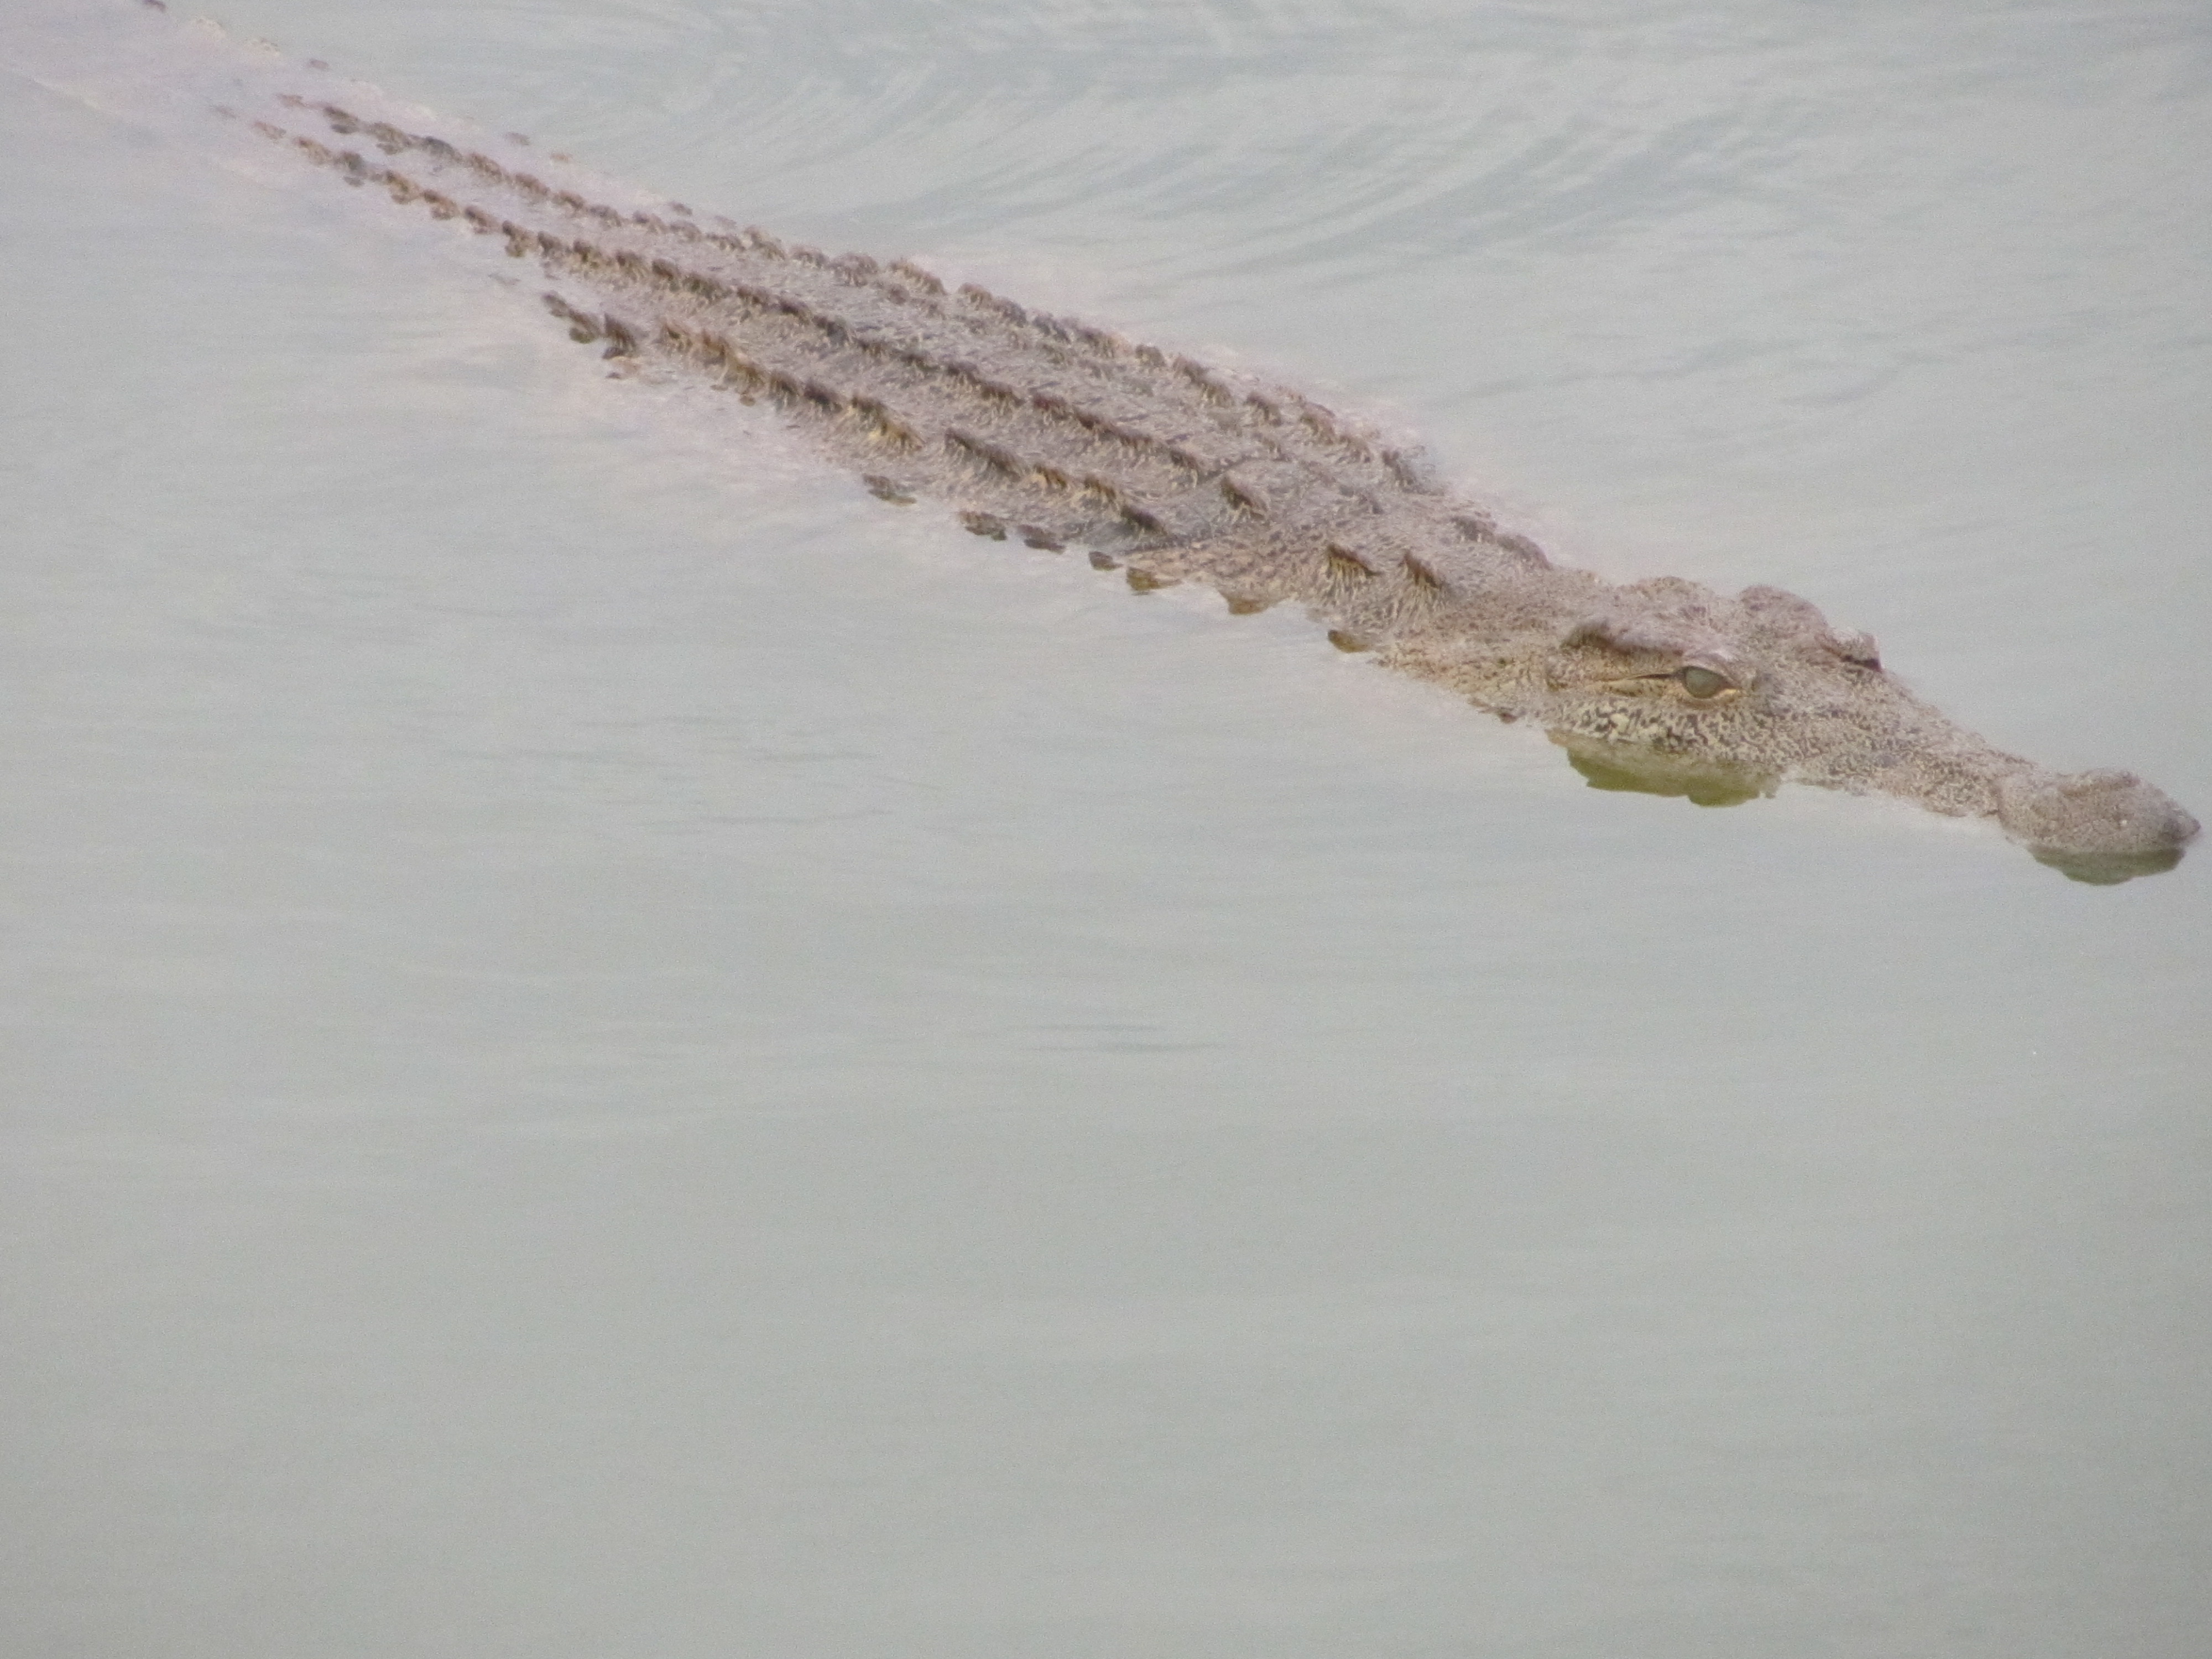 Els cocodrils surten a la superficie del llac